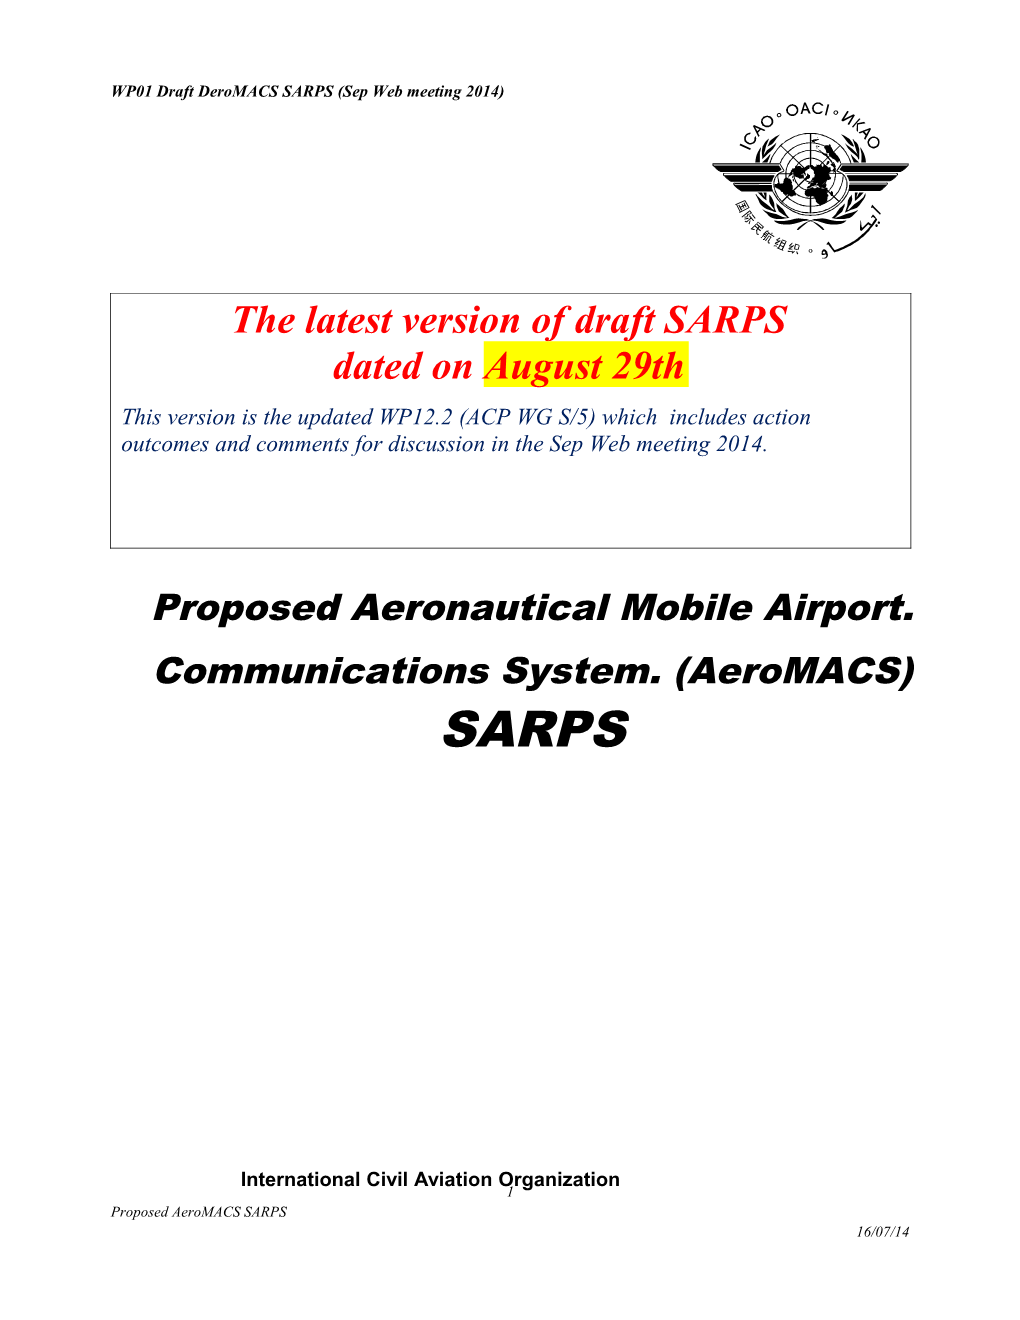 Draft Aeromacs SARPS After WGS 5